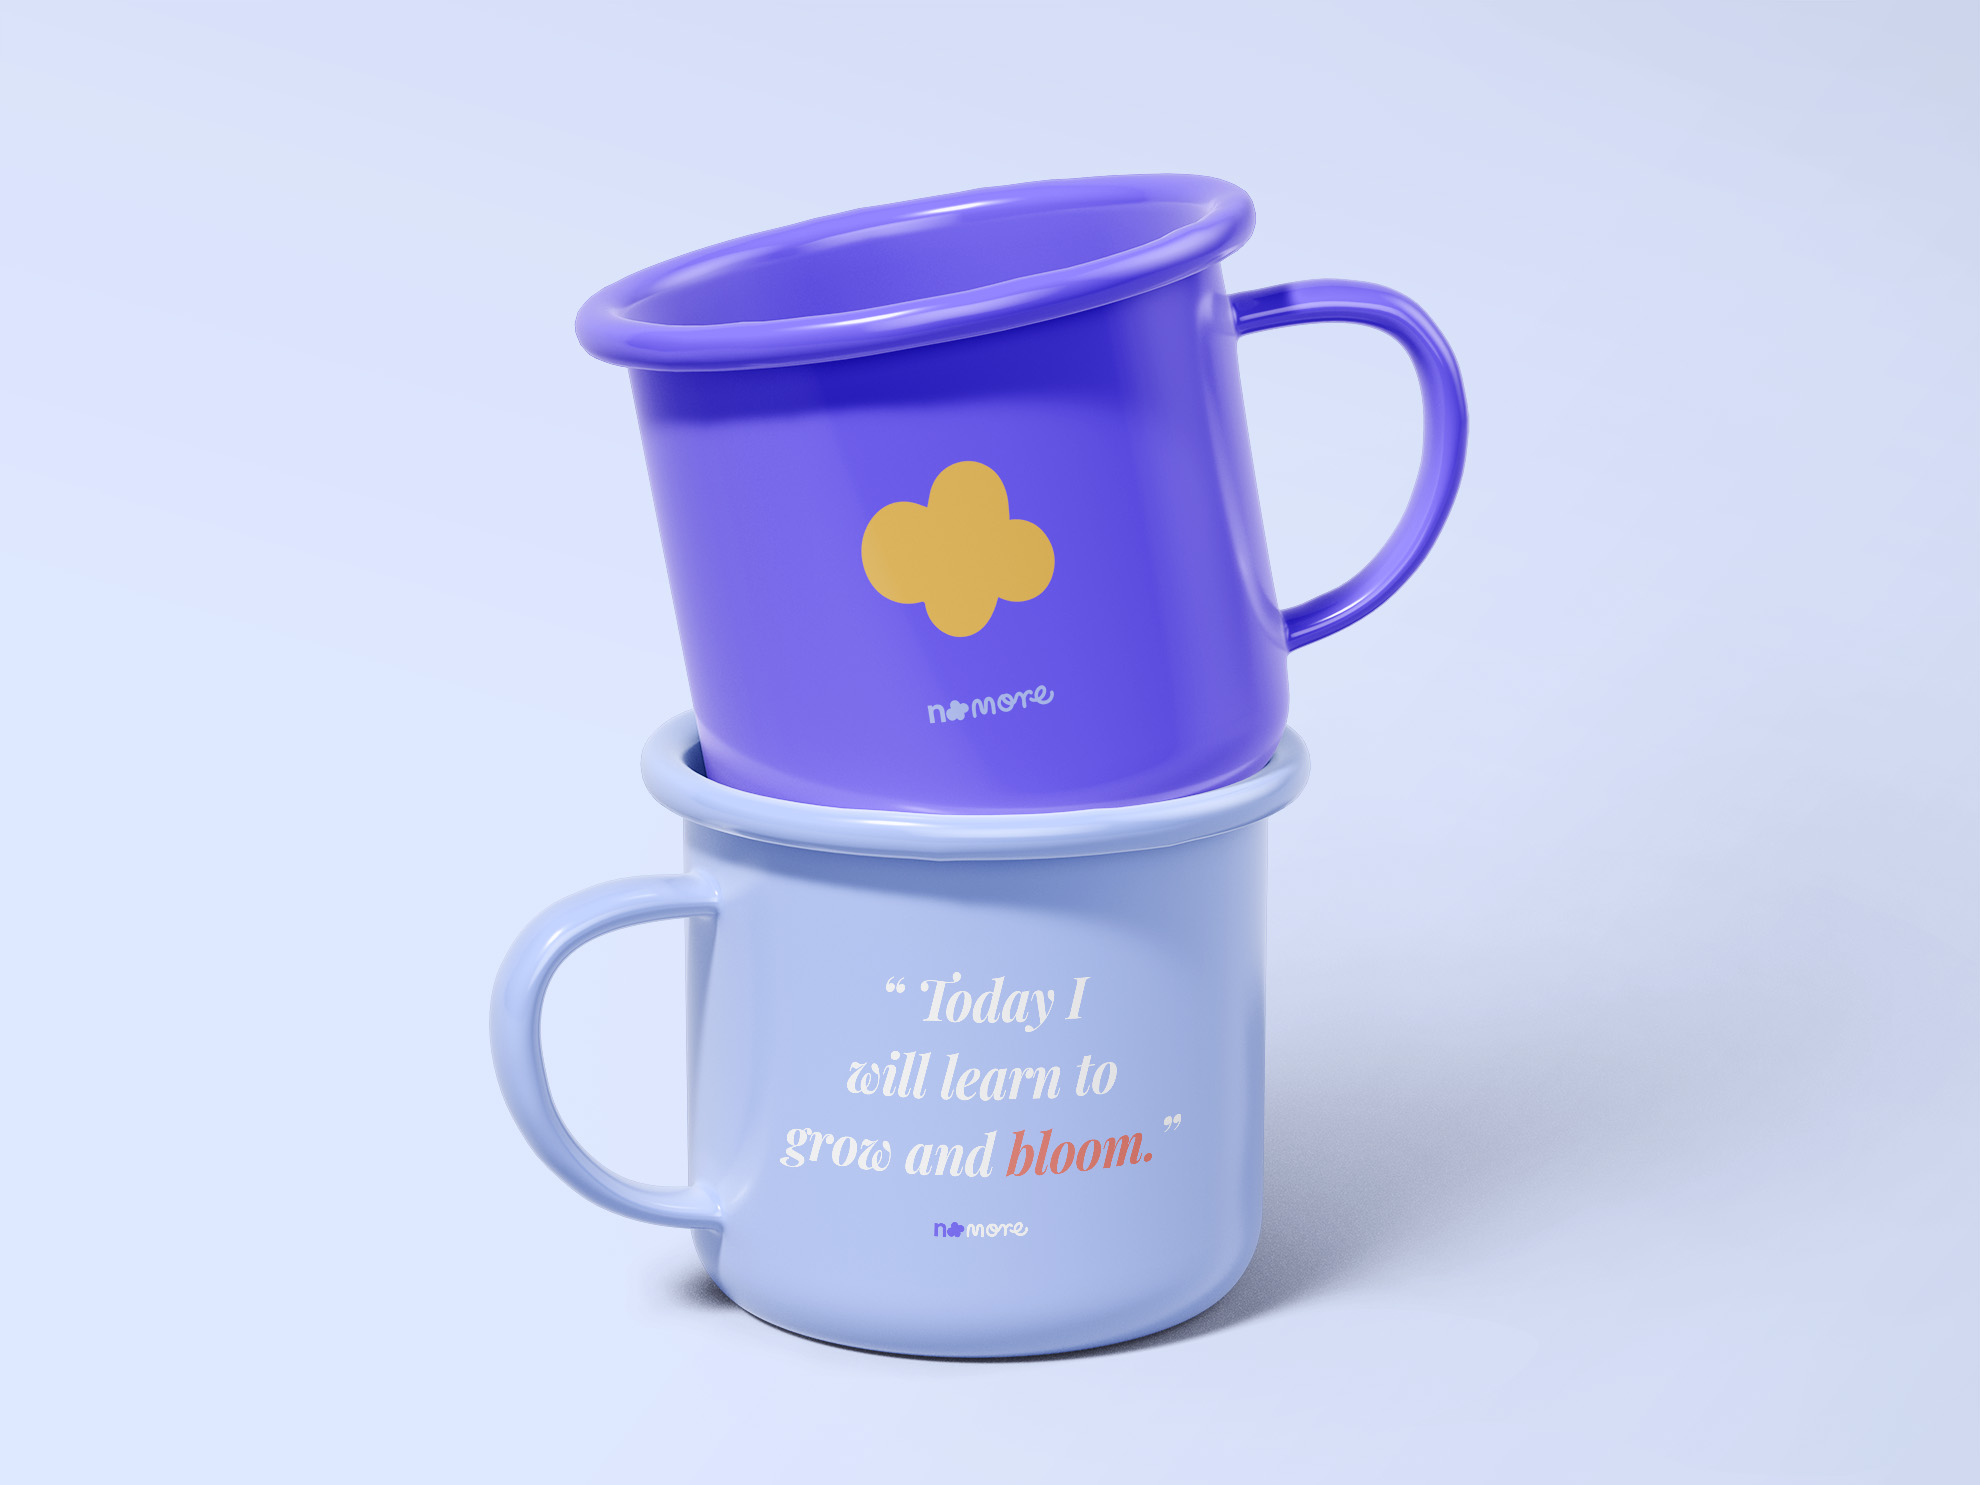 steel mugs with positive sayings